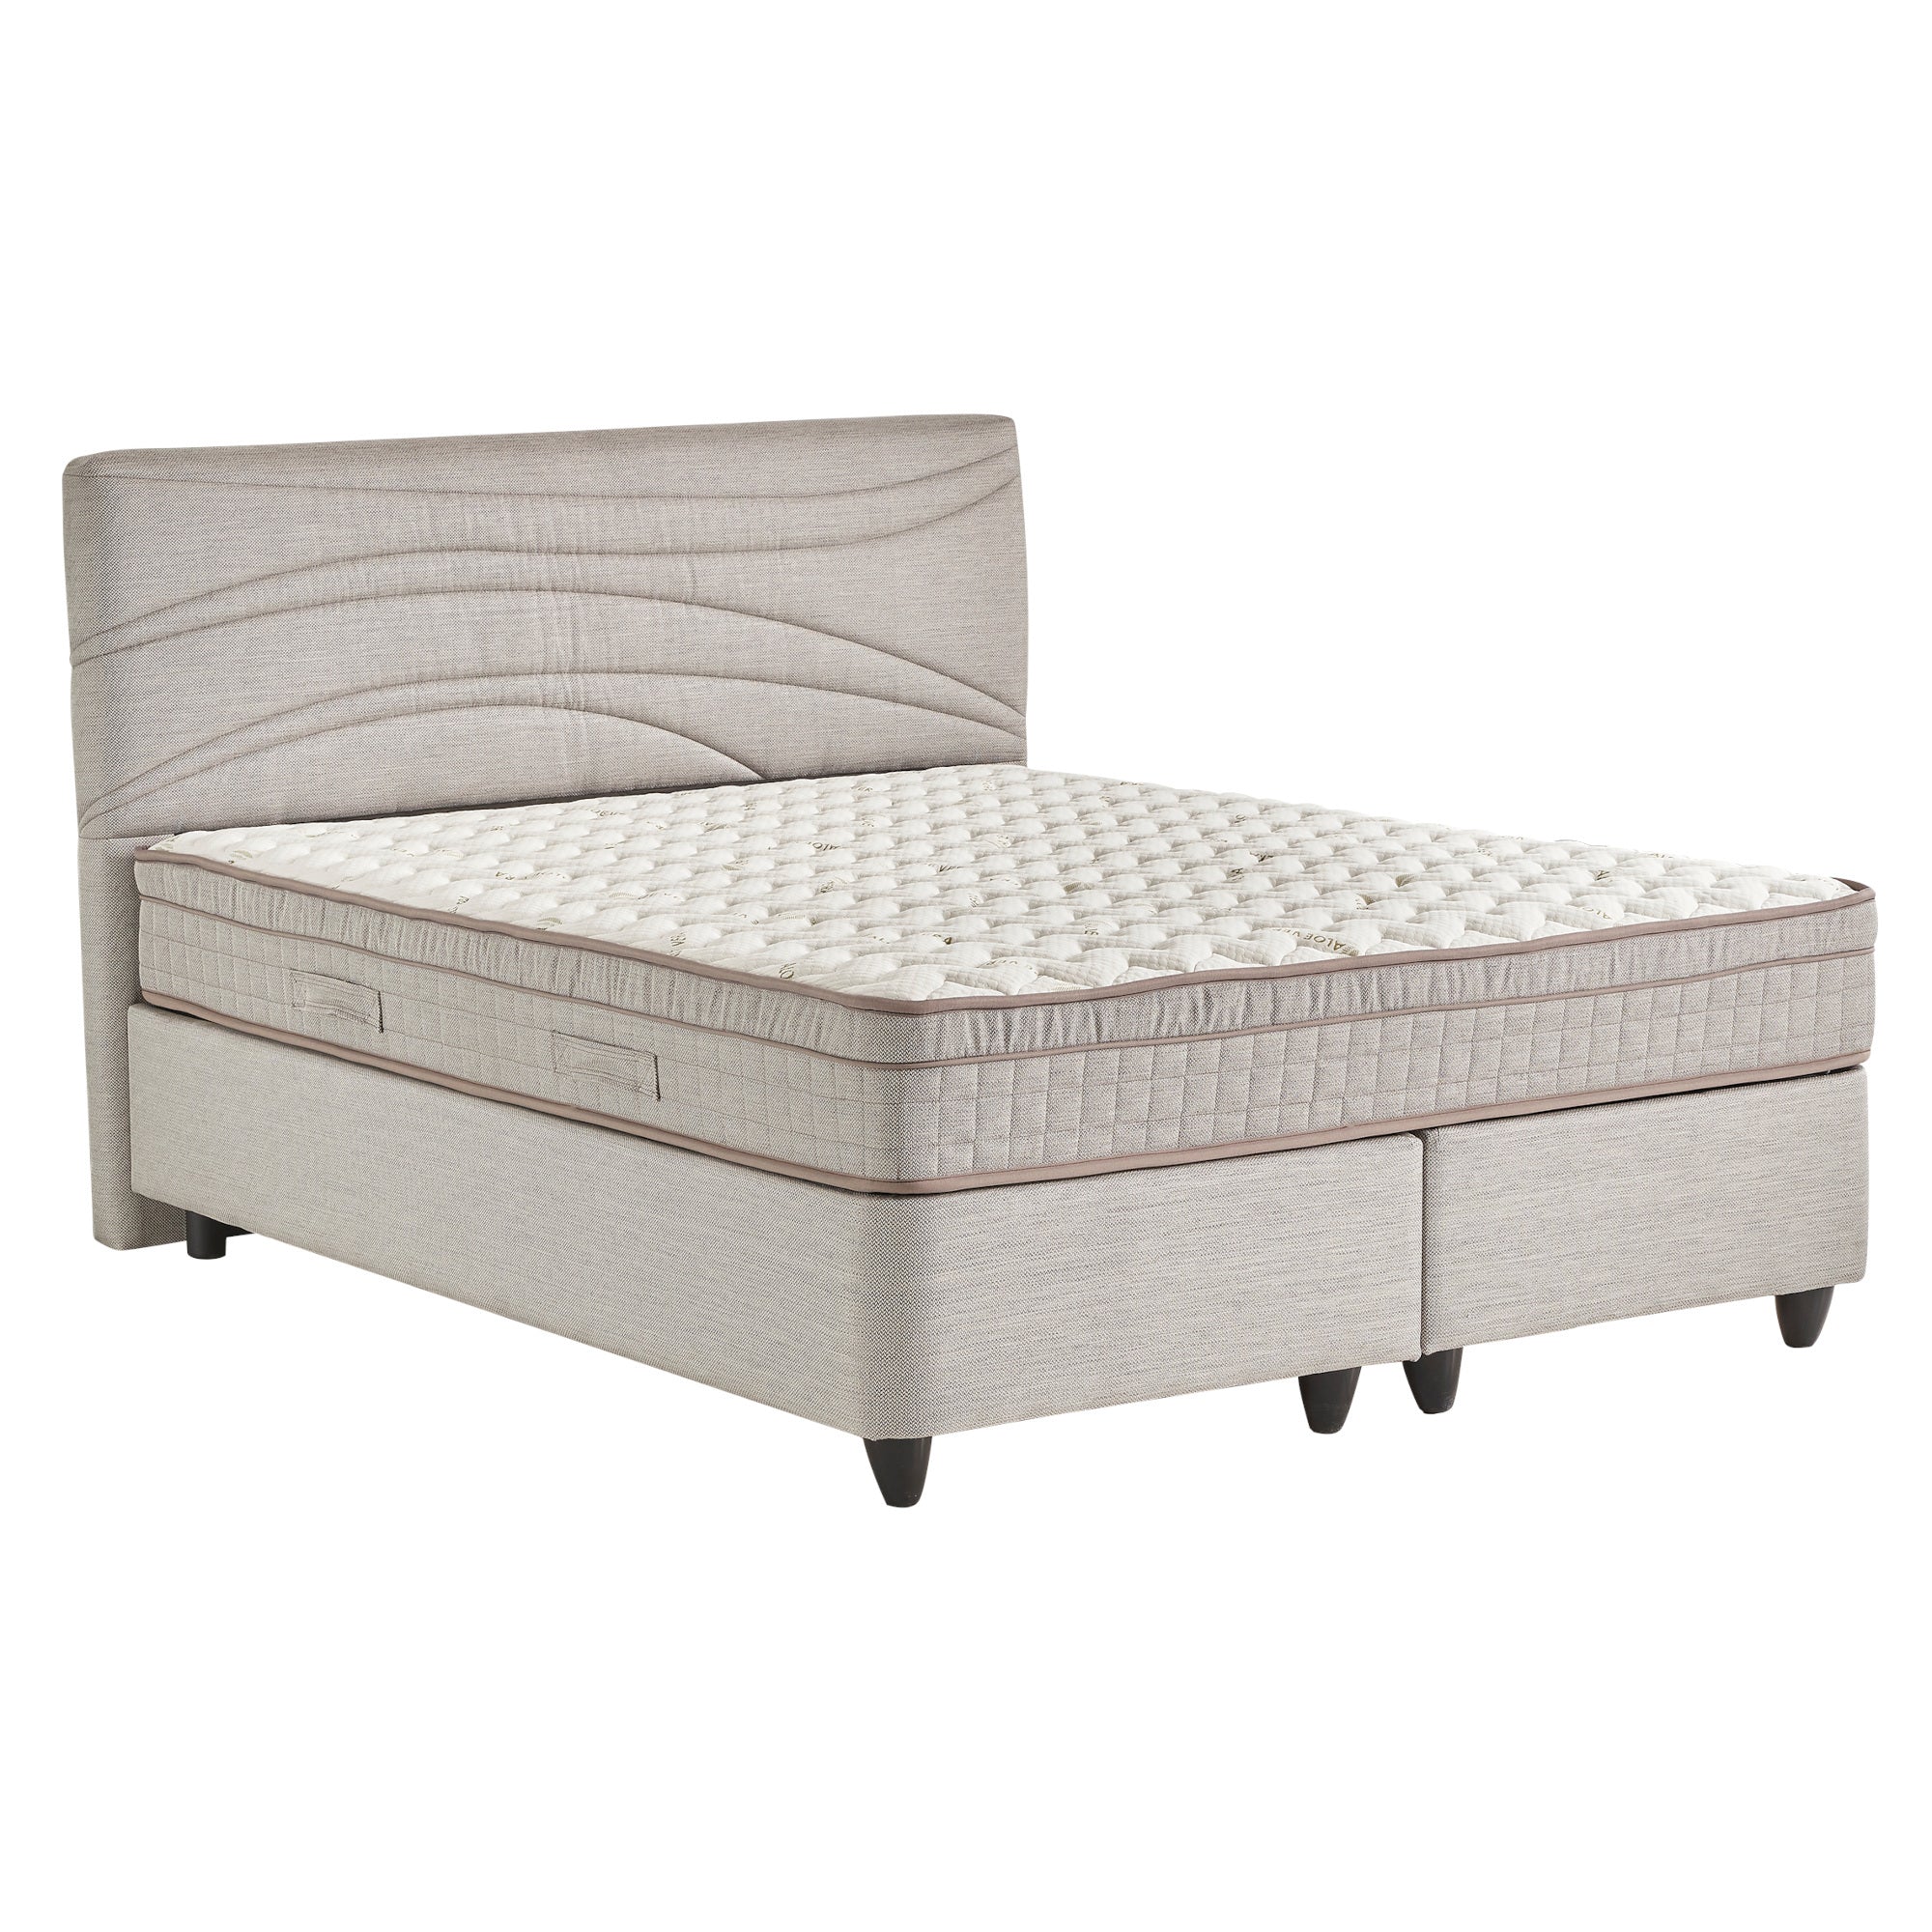 Čalouněná postel s matrací Safir 160x200, šedá, vč. topperu